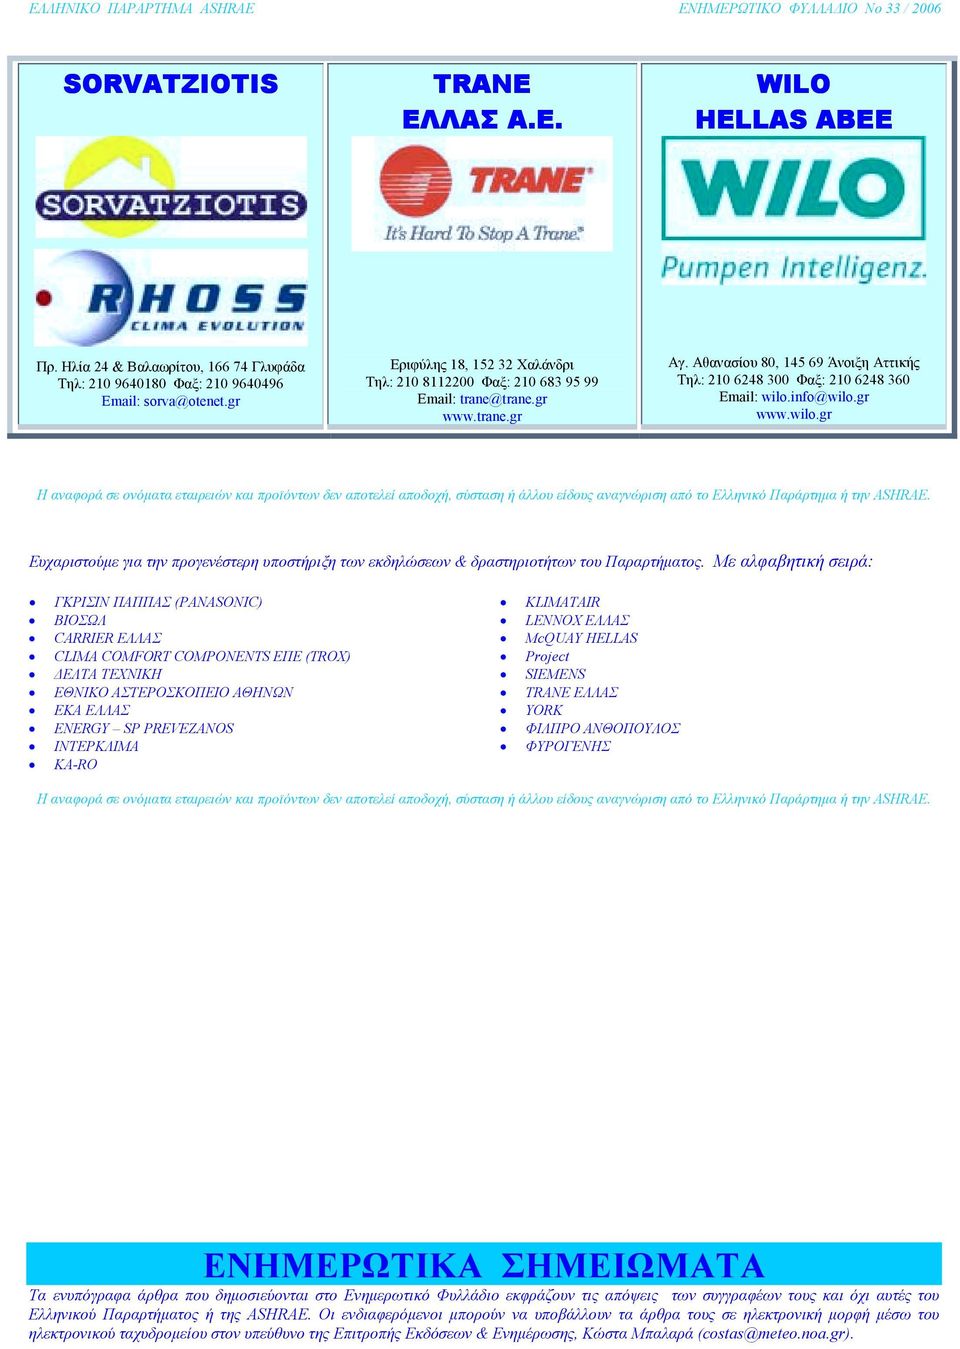 info@wilo.gr www.wilo.gr Η αναφορά σε ονόµατα εταιρειών και προϊόντων δεν αποτελεί αποδοχή, σύσταση ή άλλου είδους αναγνώριση από το Ελληνικό Παράρτηµα ή την ASHRAE.